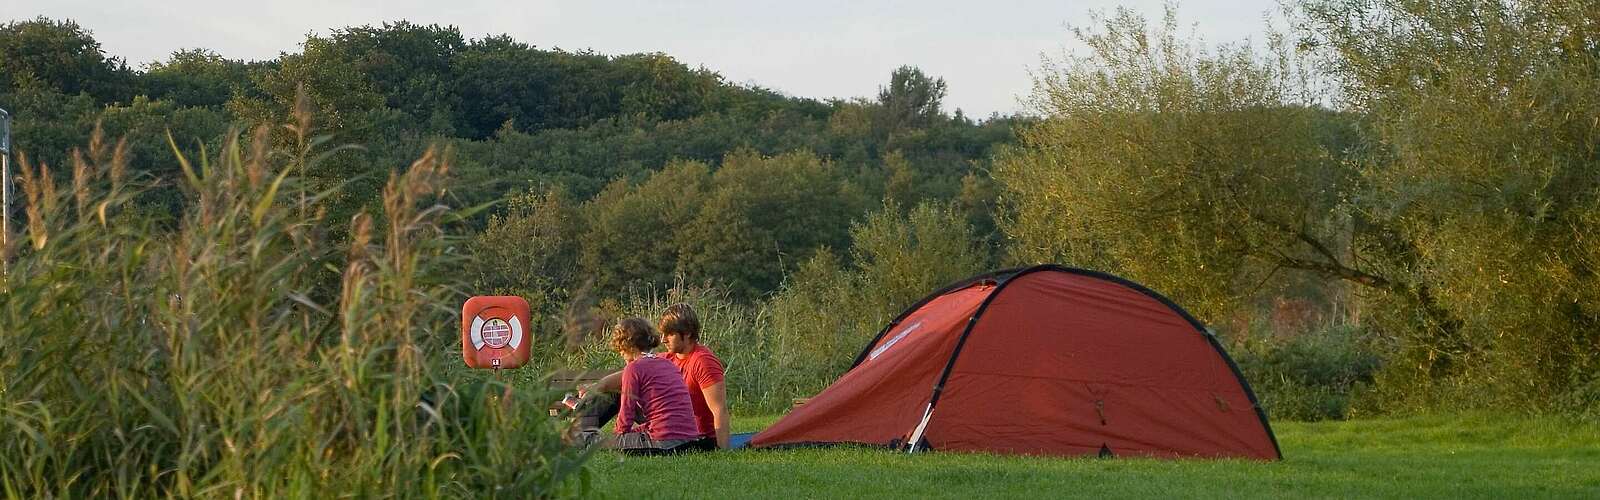 Camping in der Natur,
        
    

        Foto: Fotograf / Lizenz - Media Import/Wolfgang Ehn